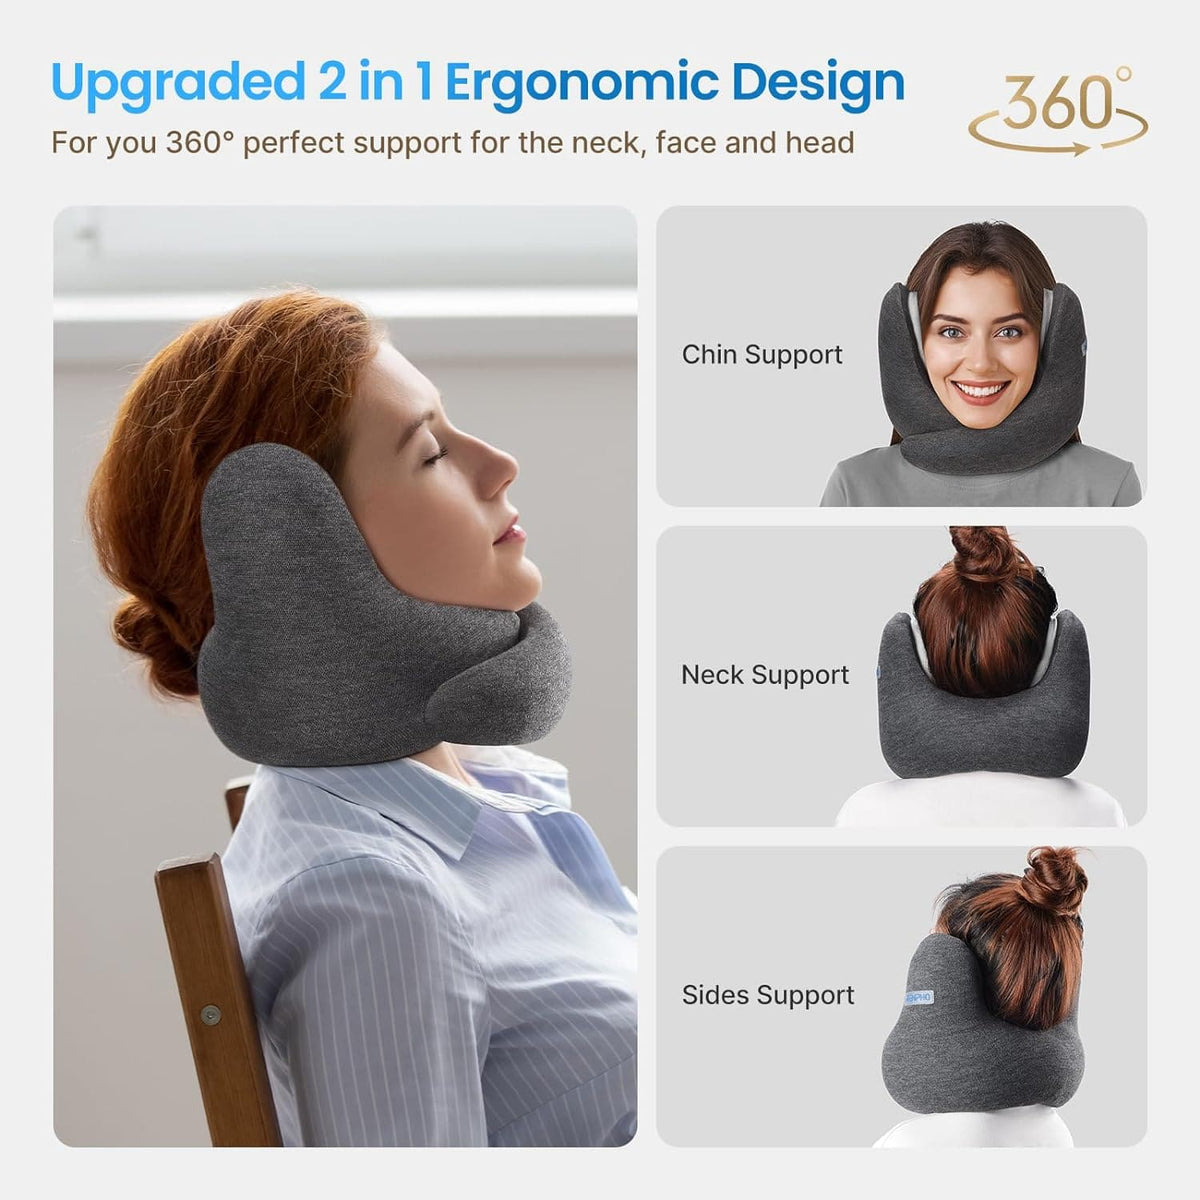 Eine Anzeige für ein graues Nackenkissen von RENPHO zeigt Bilder einer Frau, die das Kissen zur Unterstützung von Kinn, Nacken und Flanken verwendet. Ein Symbol für eine 360°-Drehung unterstreicht die Vielseitigkeit des Kissens bei der kompletten Unterstützung des Kopfes.